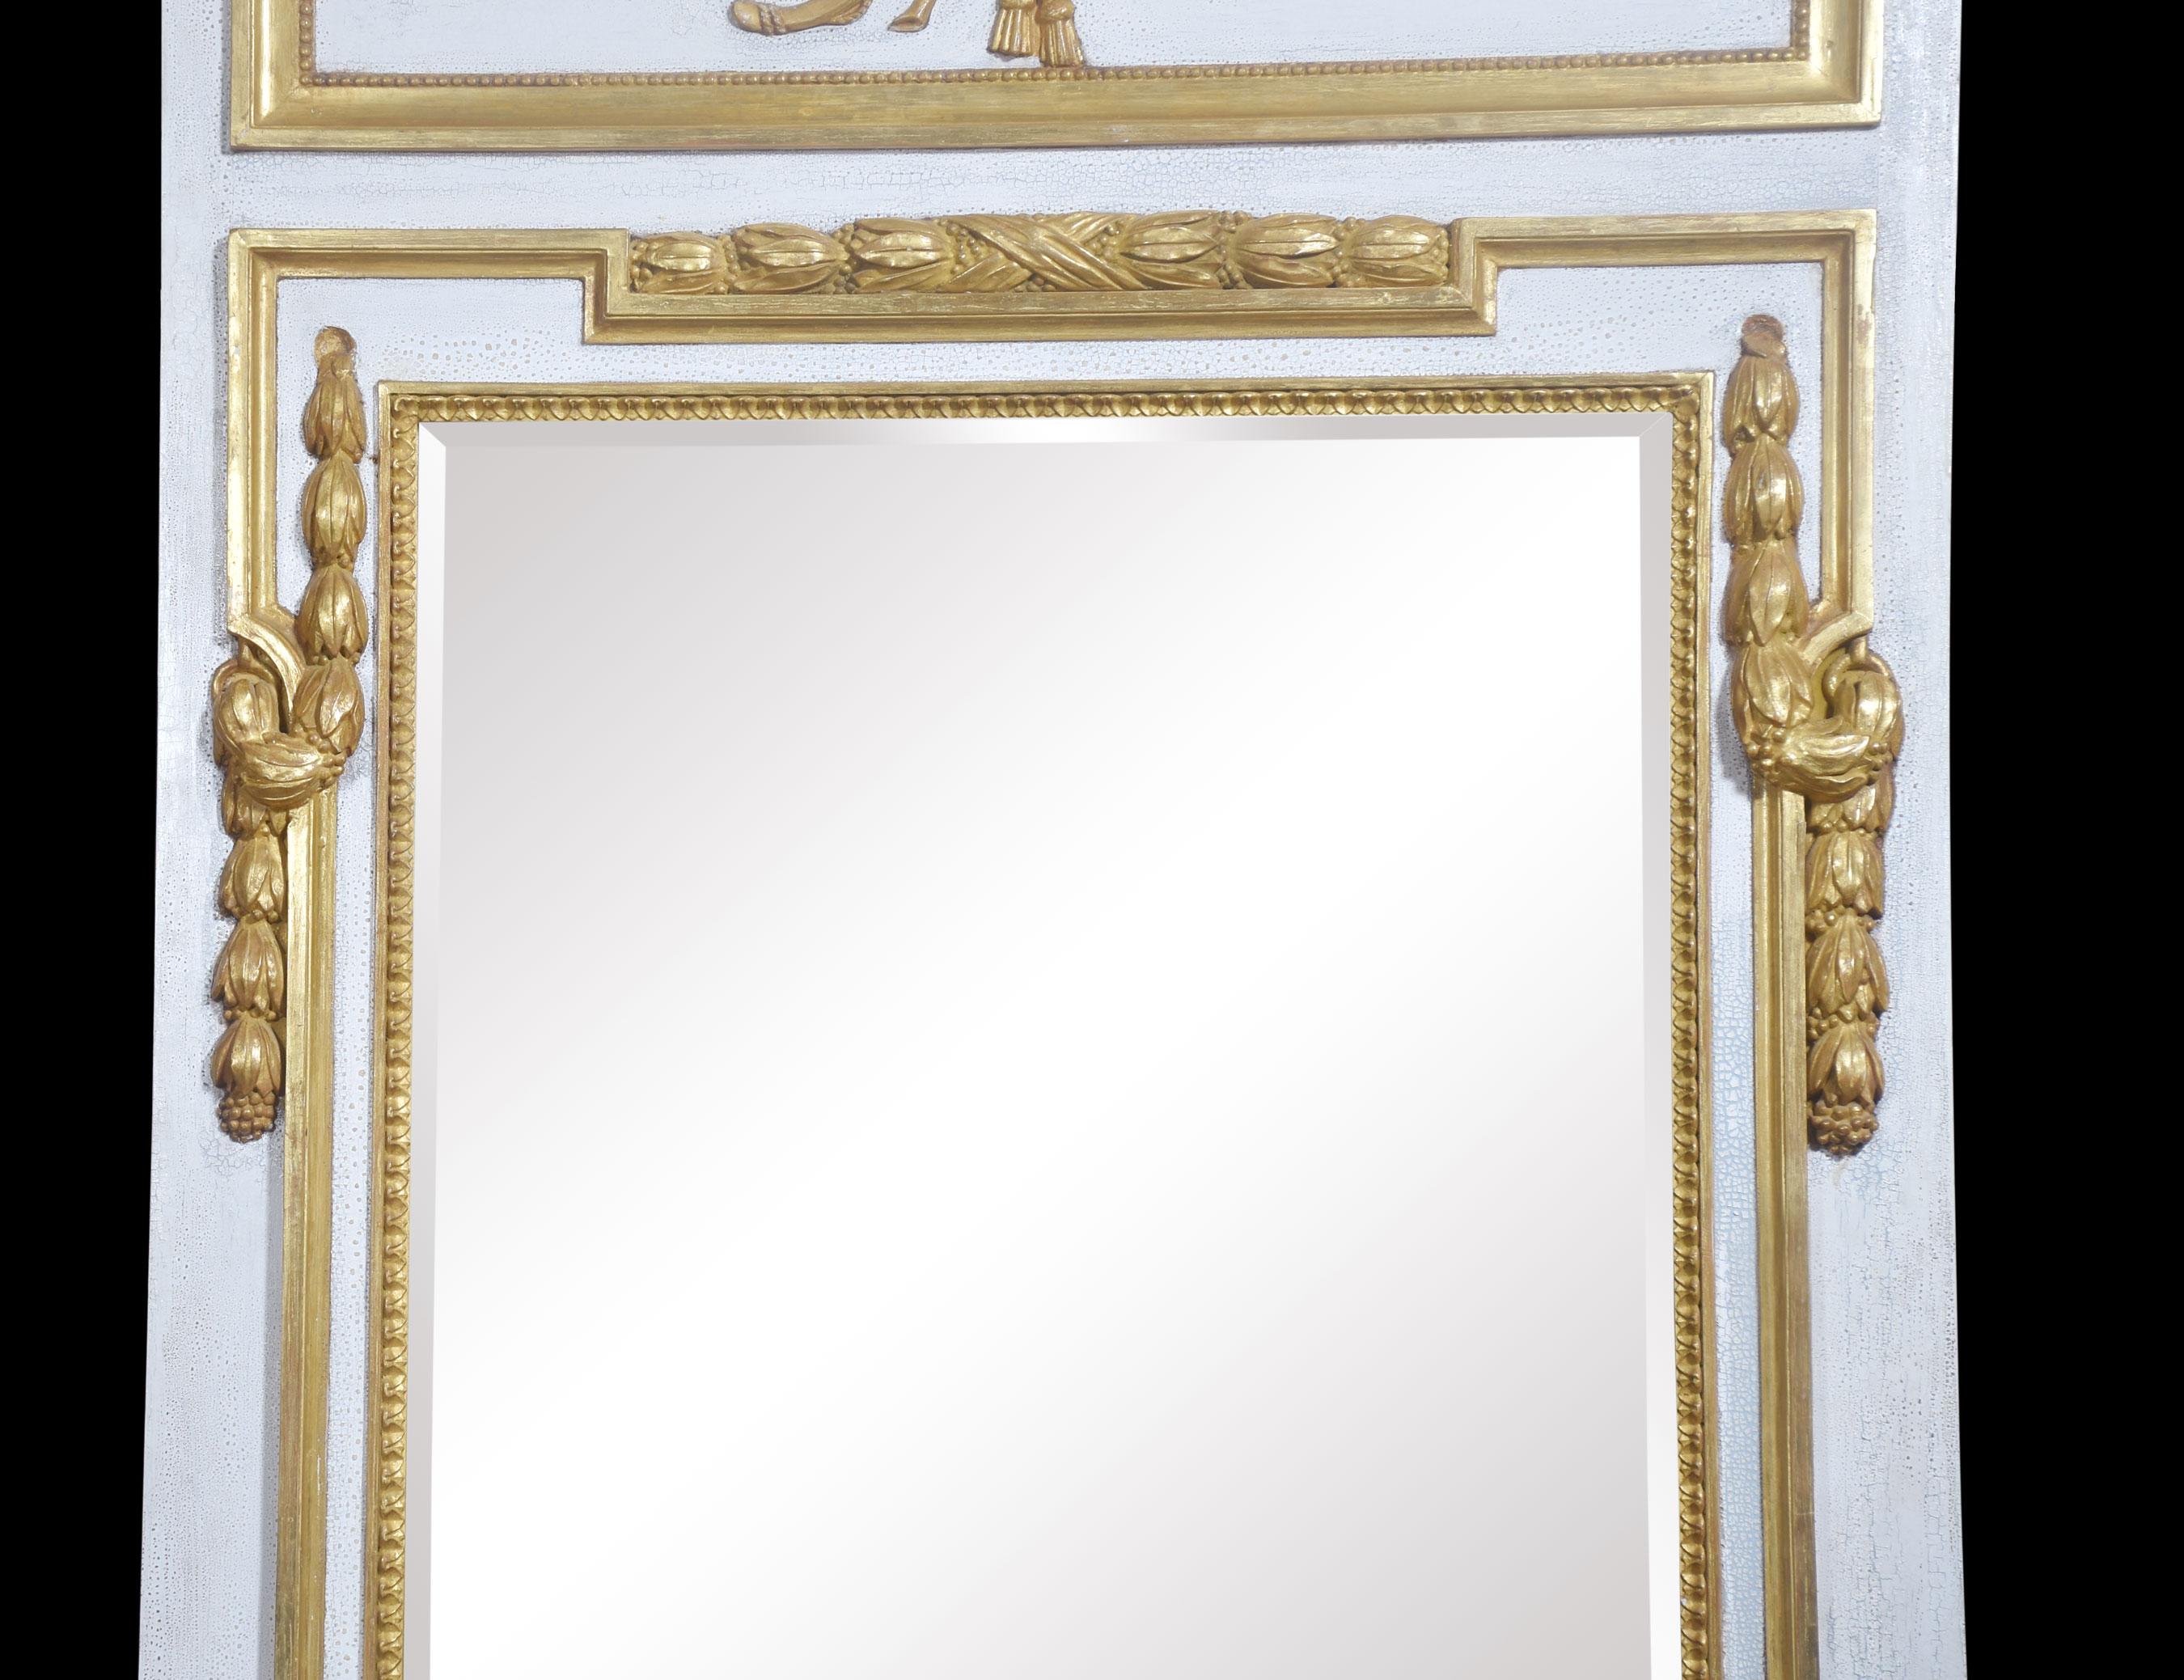 Weiß gestrichener Wandspiegel mit geschnitzter Flammenfackel und Köcher aus vergoldetem Holz, über der ursprünglichen, abgeschrägten Spiegelplatte, die von einer Goldholzeinfassung umgeben ist.
Abmessungen
Höhe 79 Zoll
Breite 43 Zoll
Tiefe 3,5 Zoll